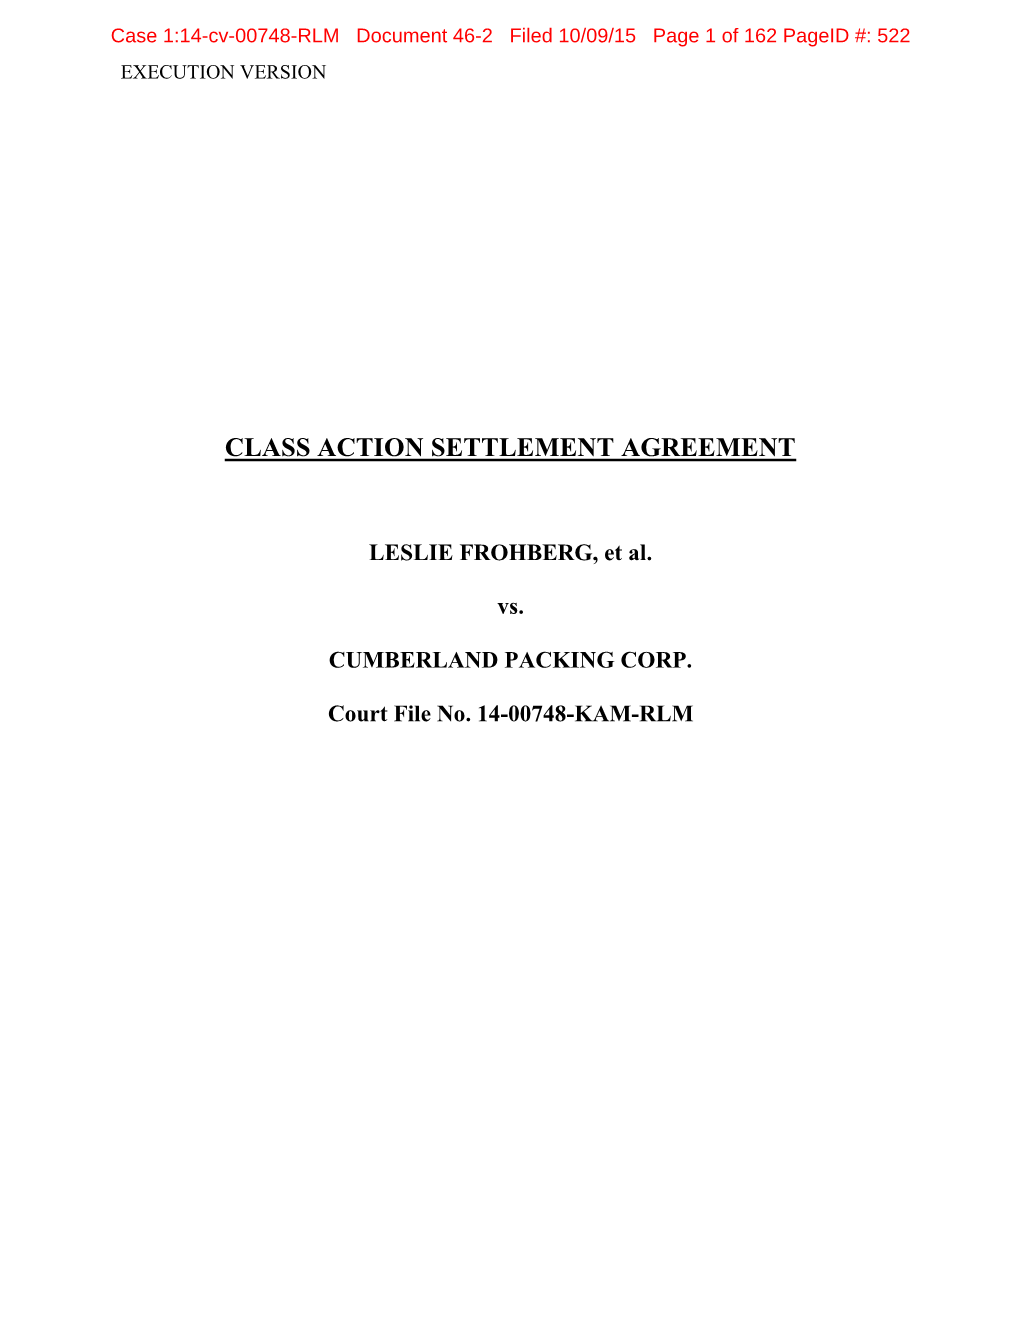 Class Action Settlement Agreement